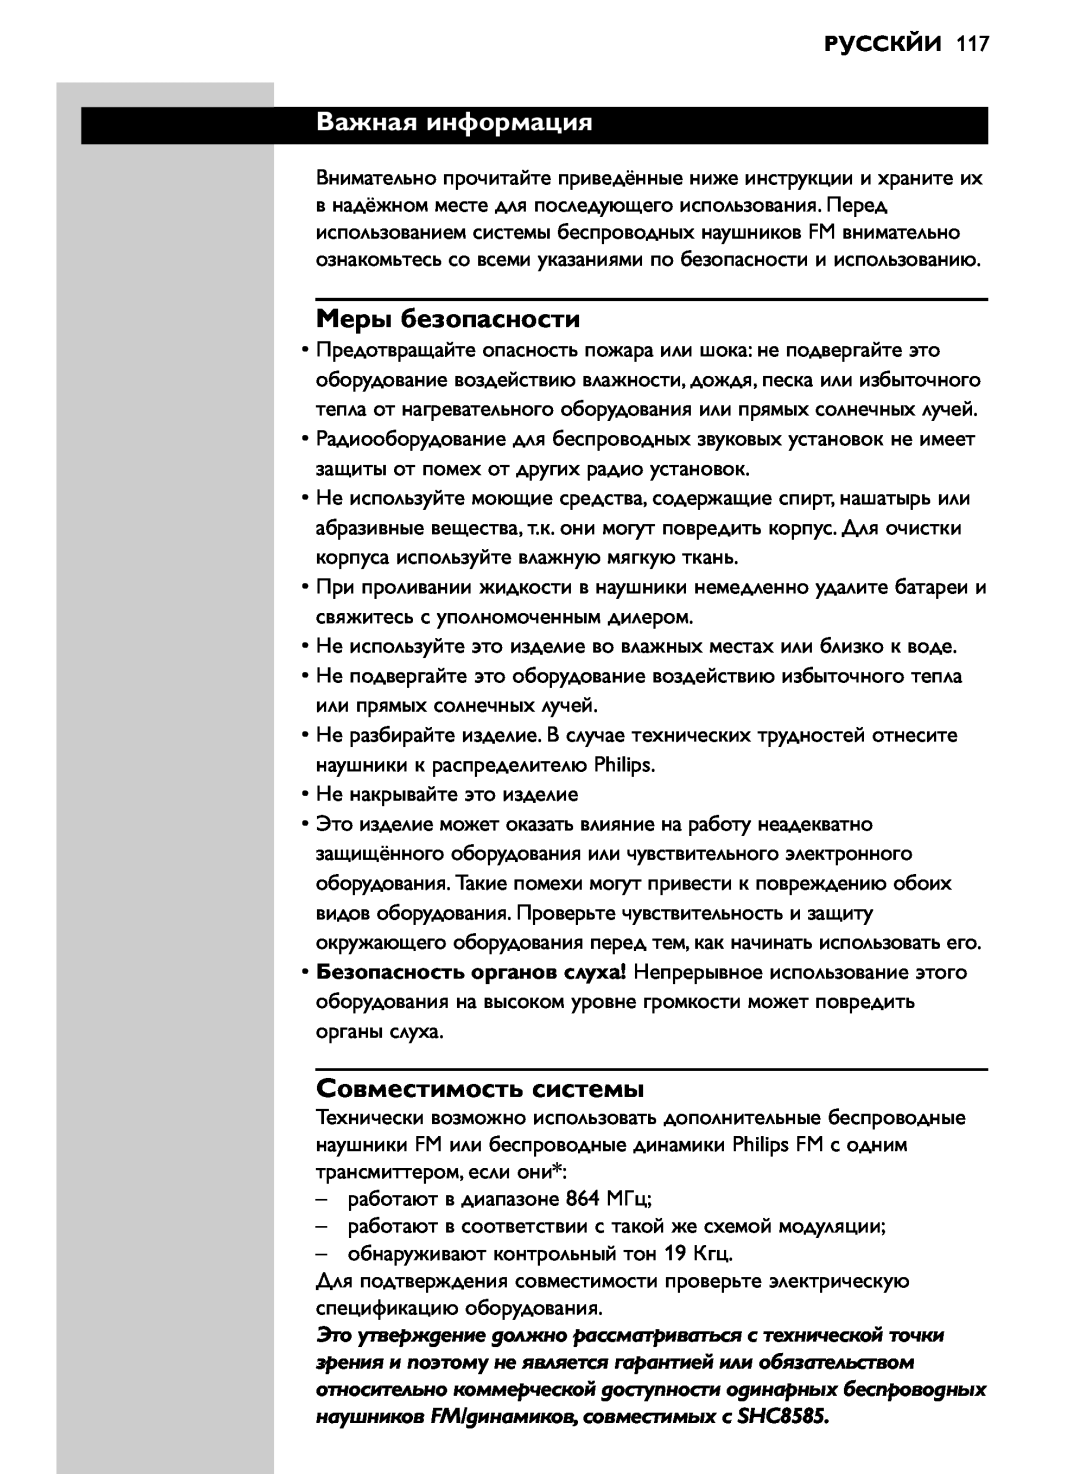 Philips SHC8585/00 manual Важная информация, Меры безопасности, Совместимость системы, Русскйи 